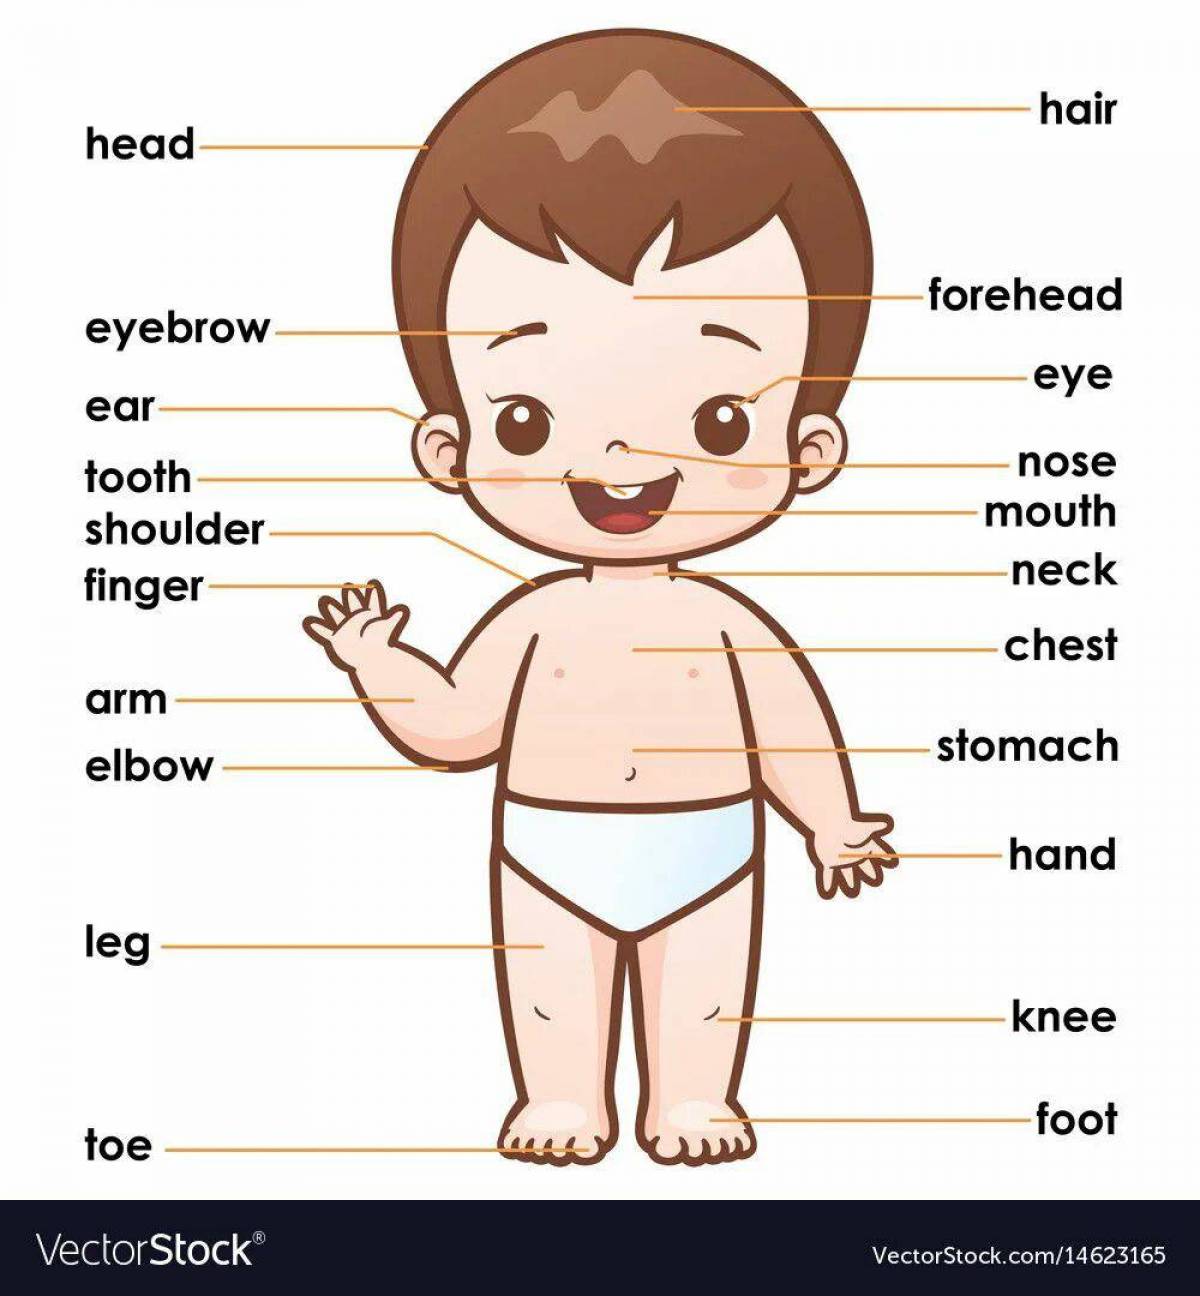 Части тела на английском для детей #9